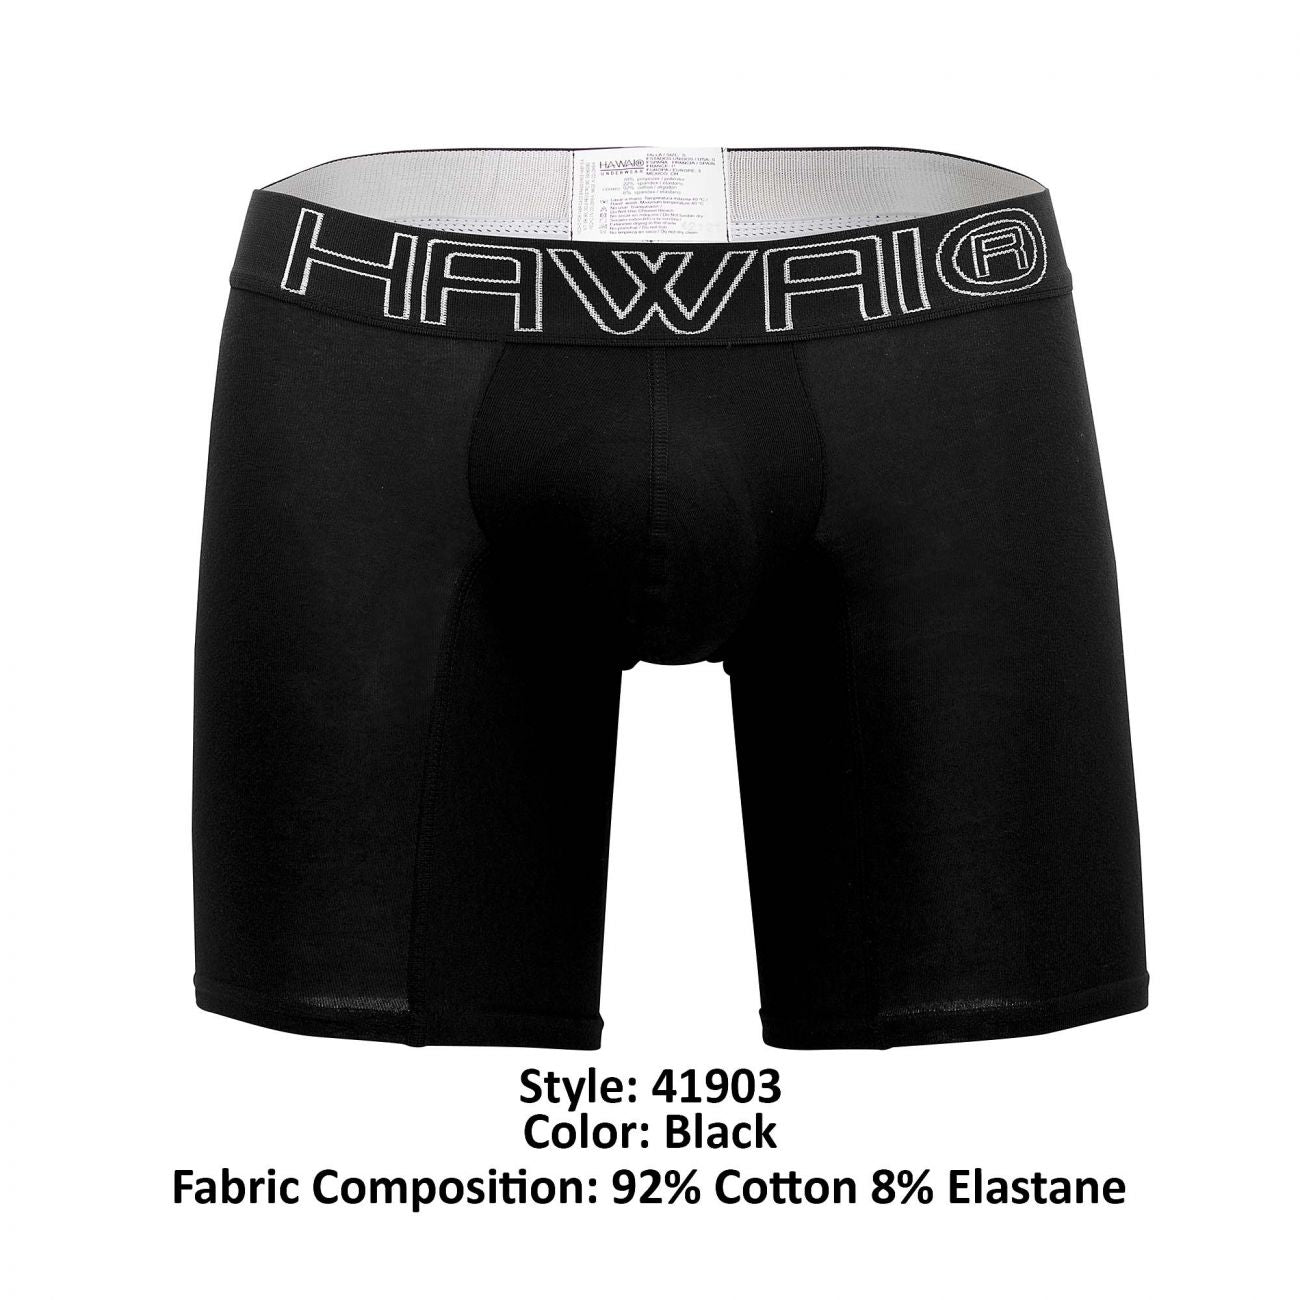 HAWAI 41903 Solid Athletic Boxer Briefs Black